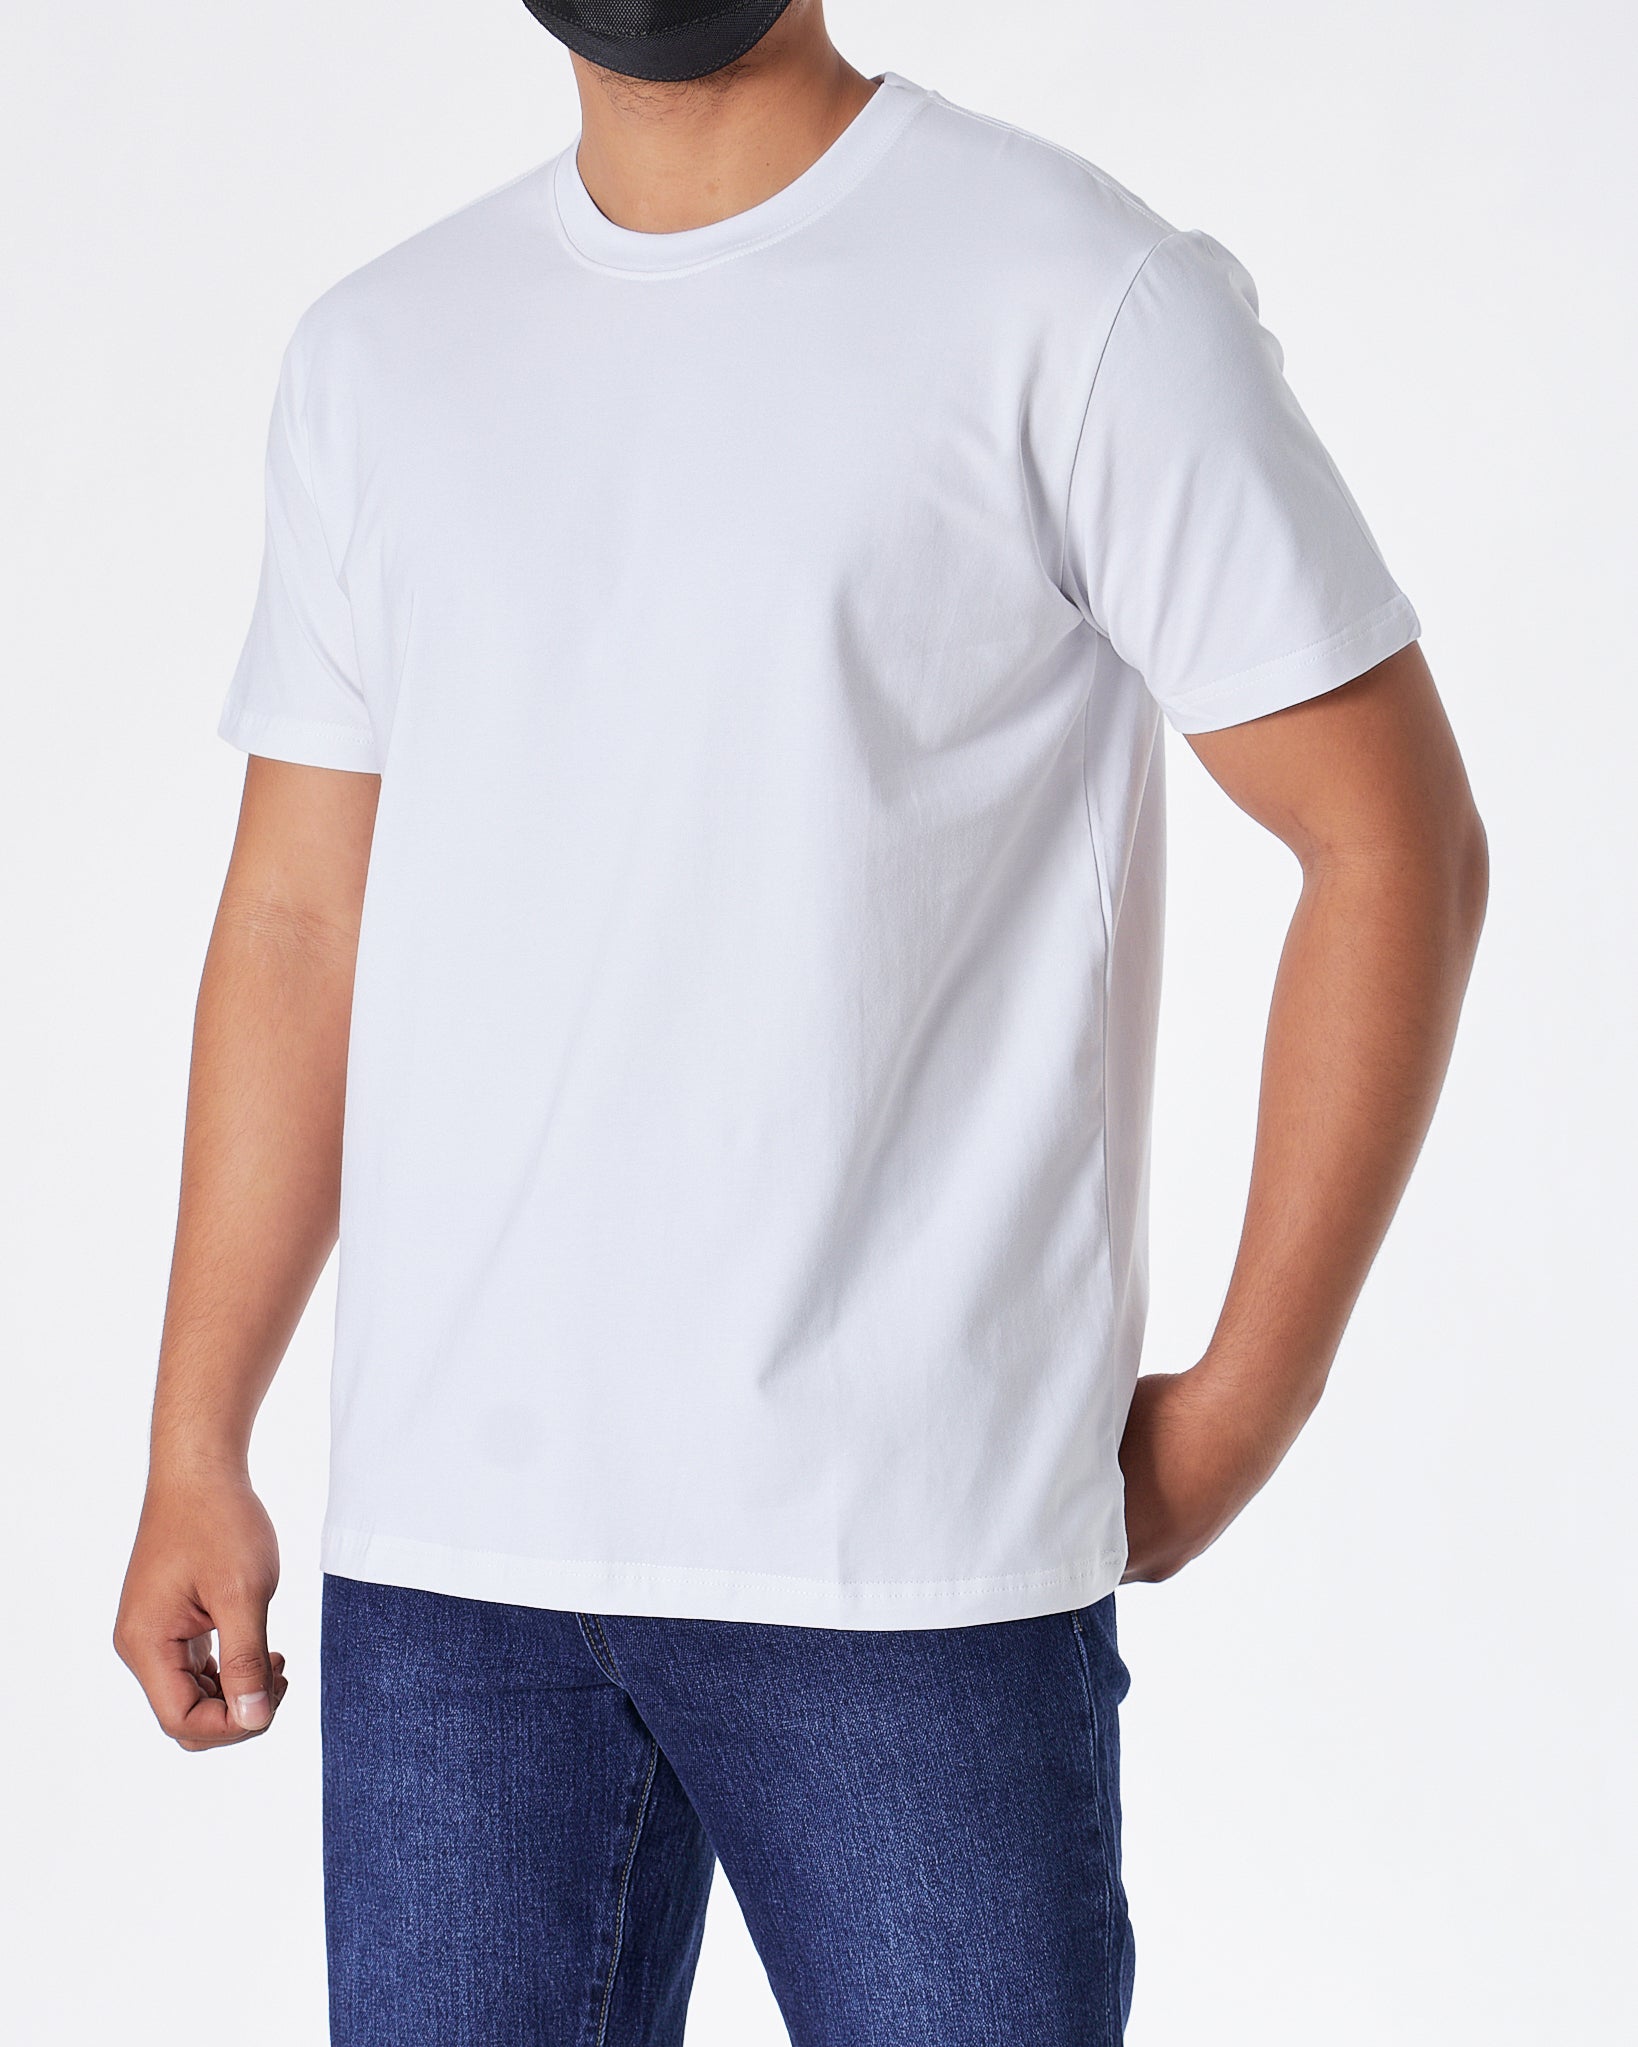 MOI OUTFIT-ABA Plain Color Men White T-Shirt 14.90